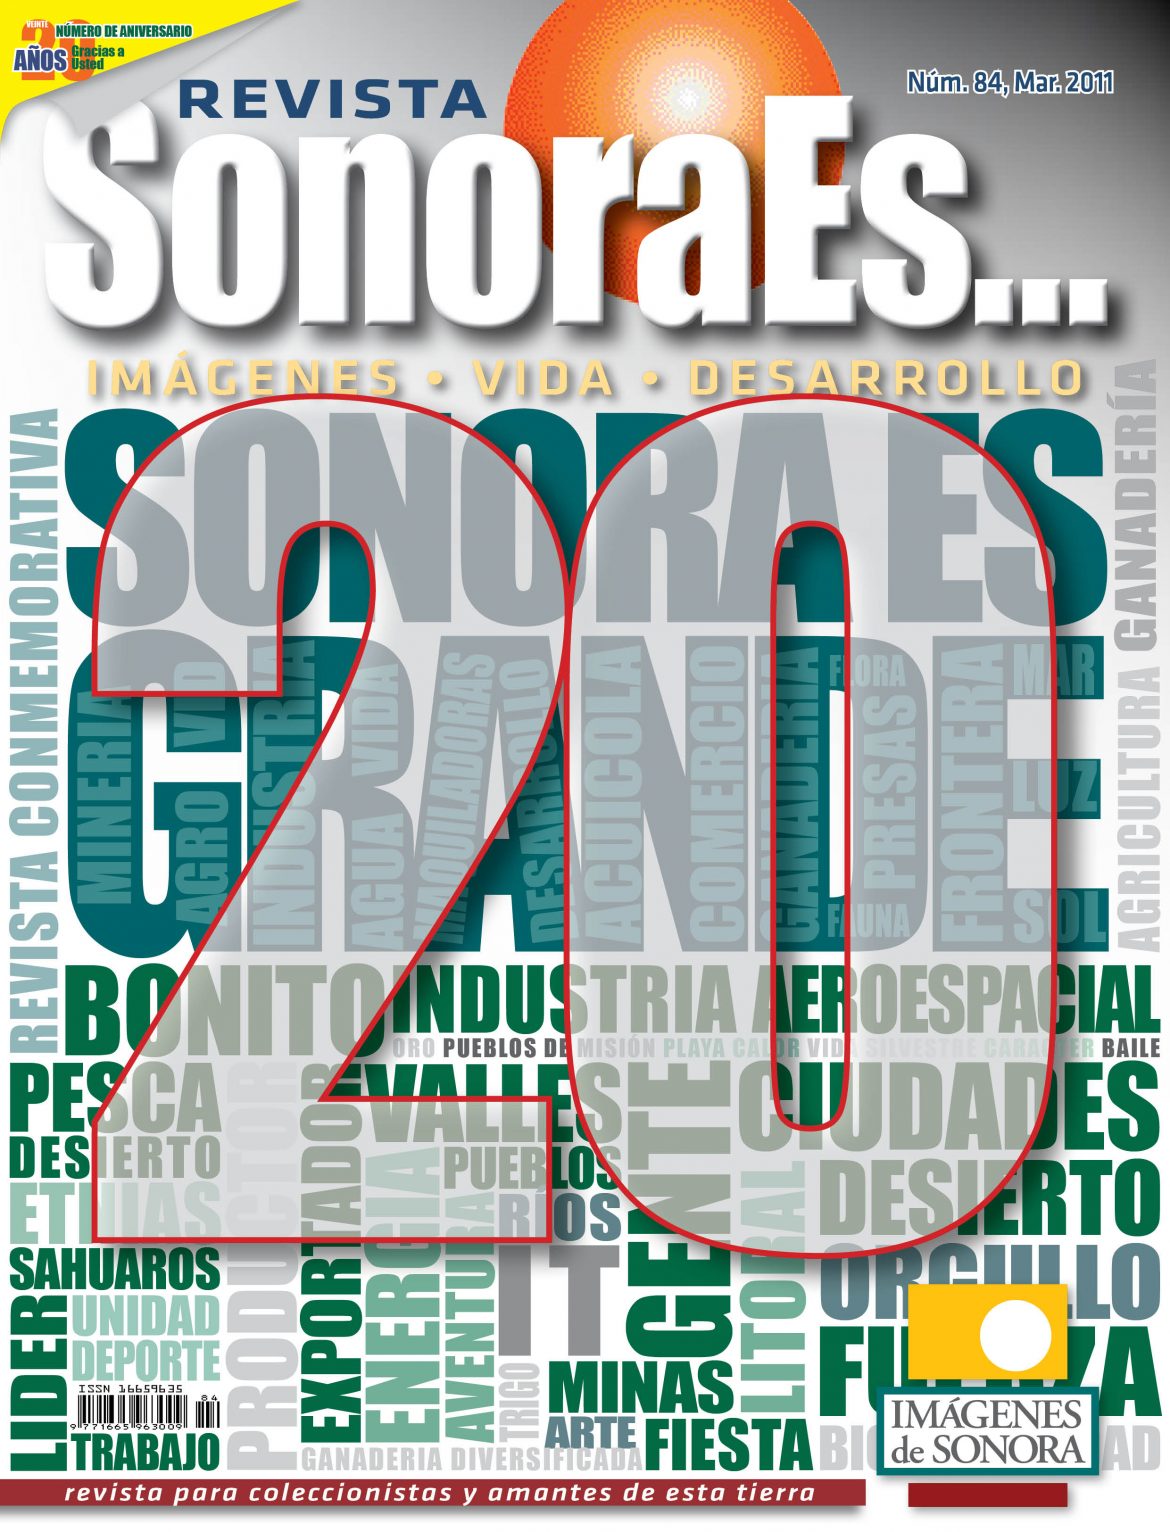 SonoraEs… revista y proyecto cumple 20 años